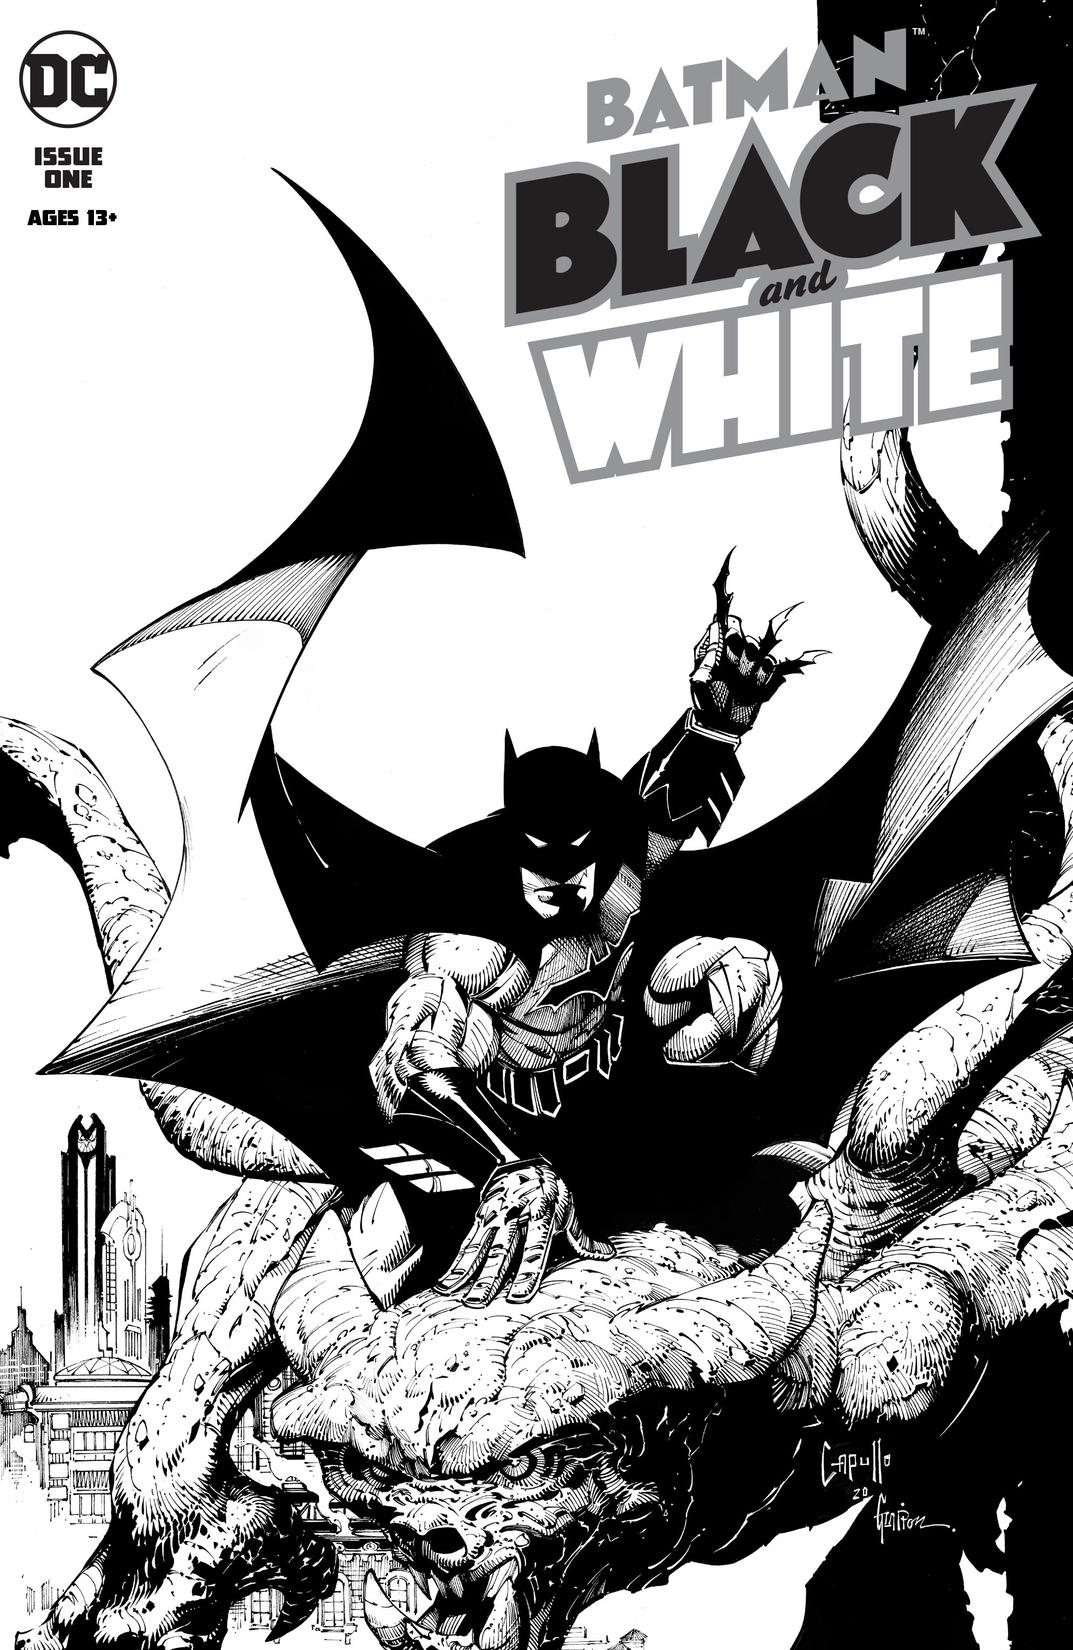 Batman Black & White (2020-) #1 preview images